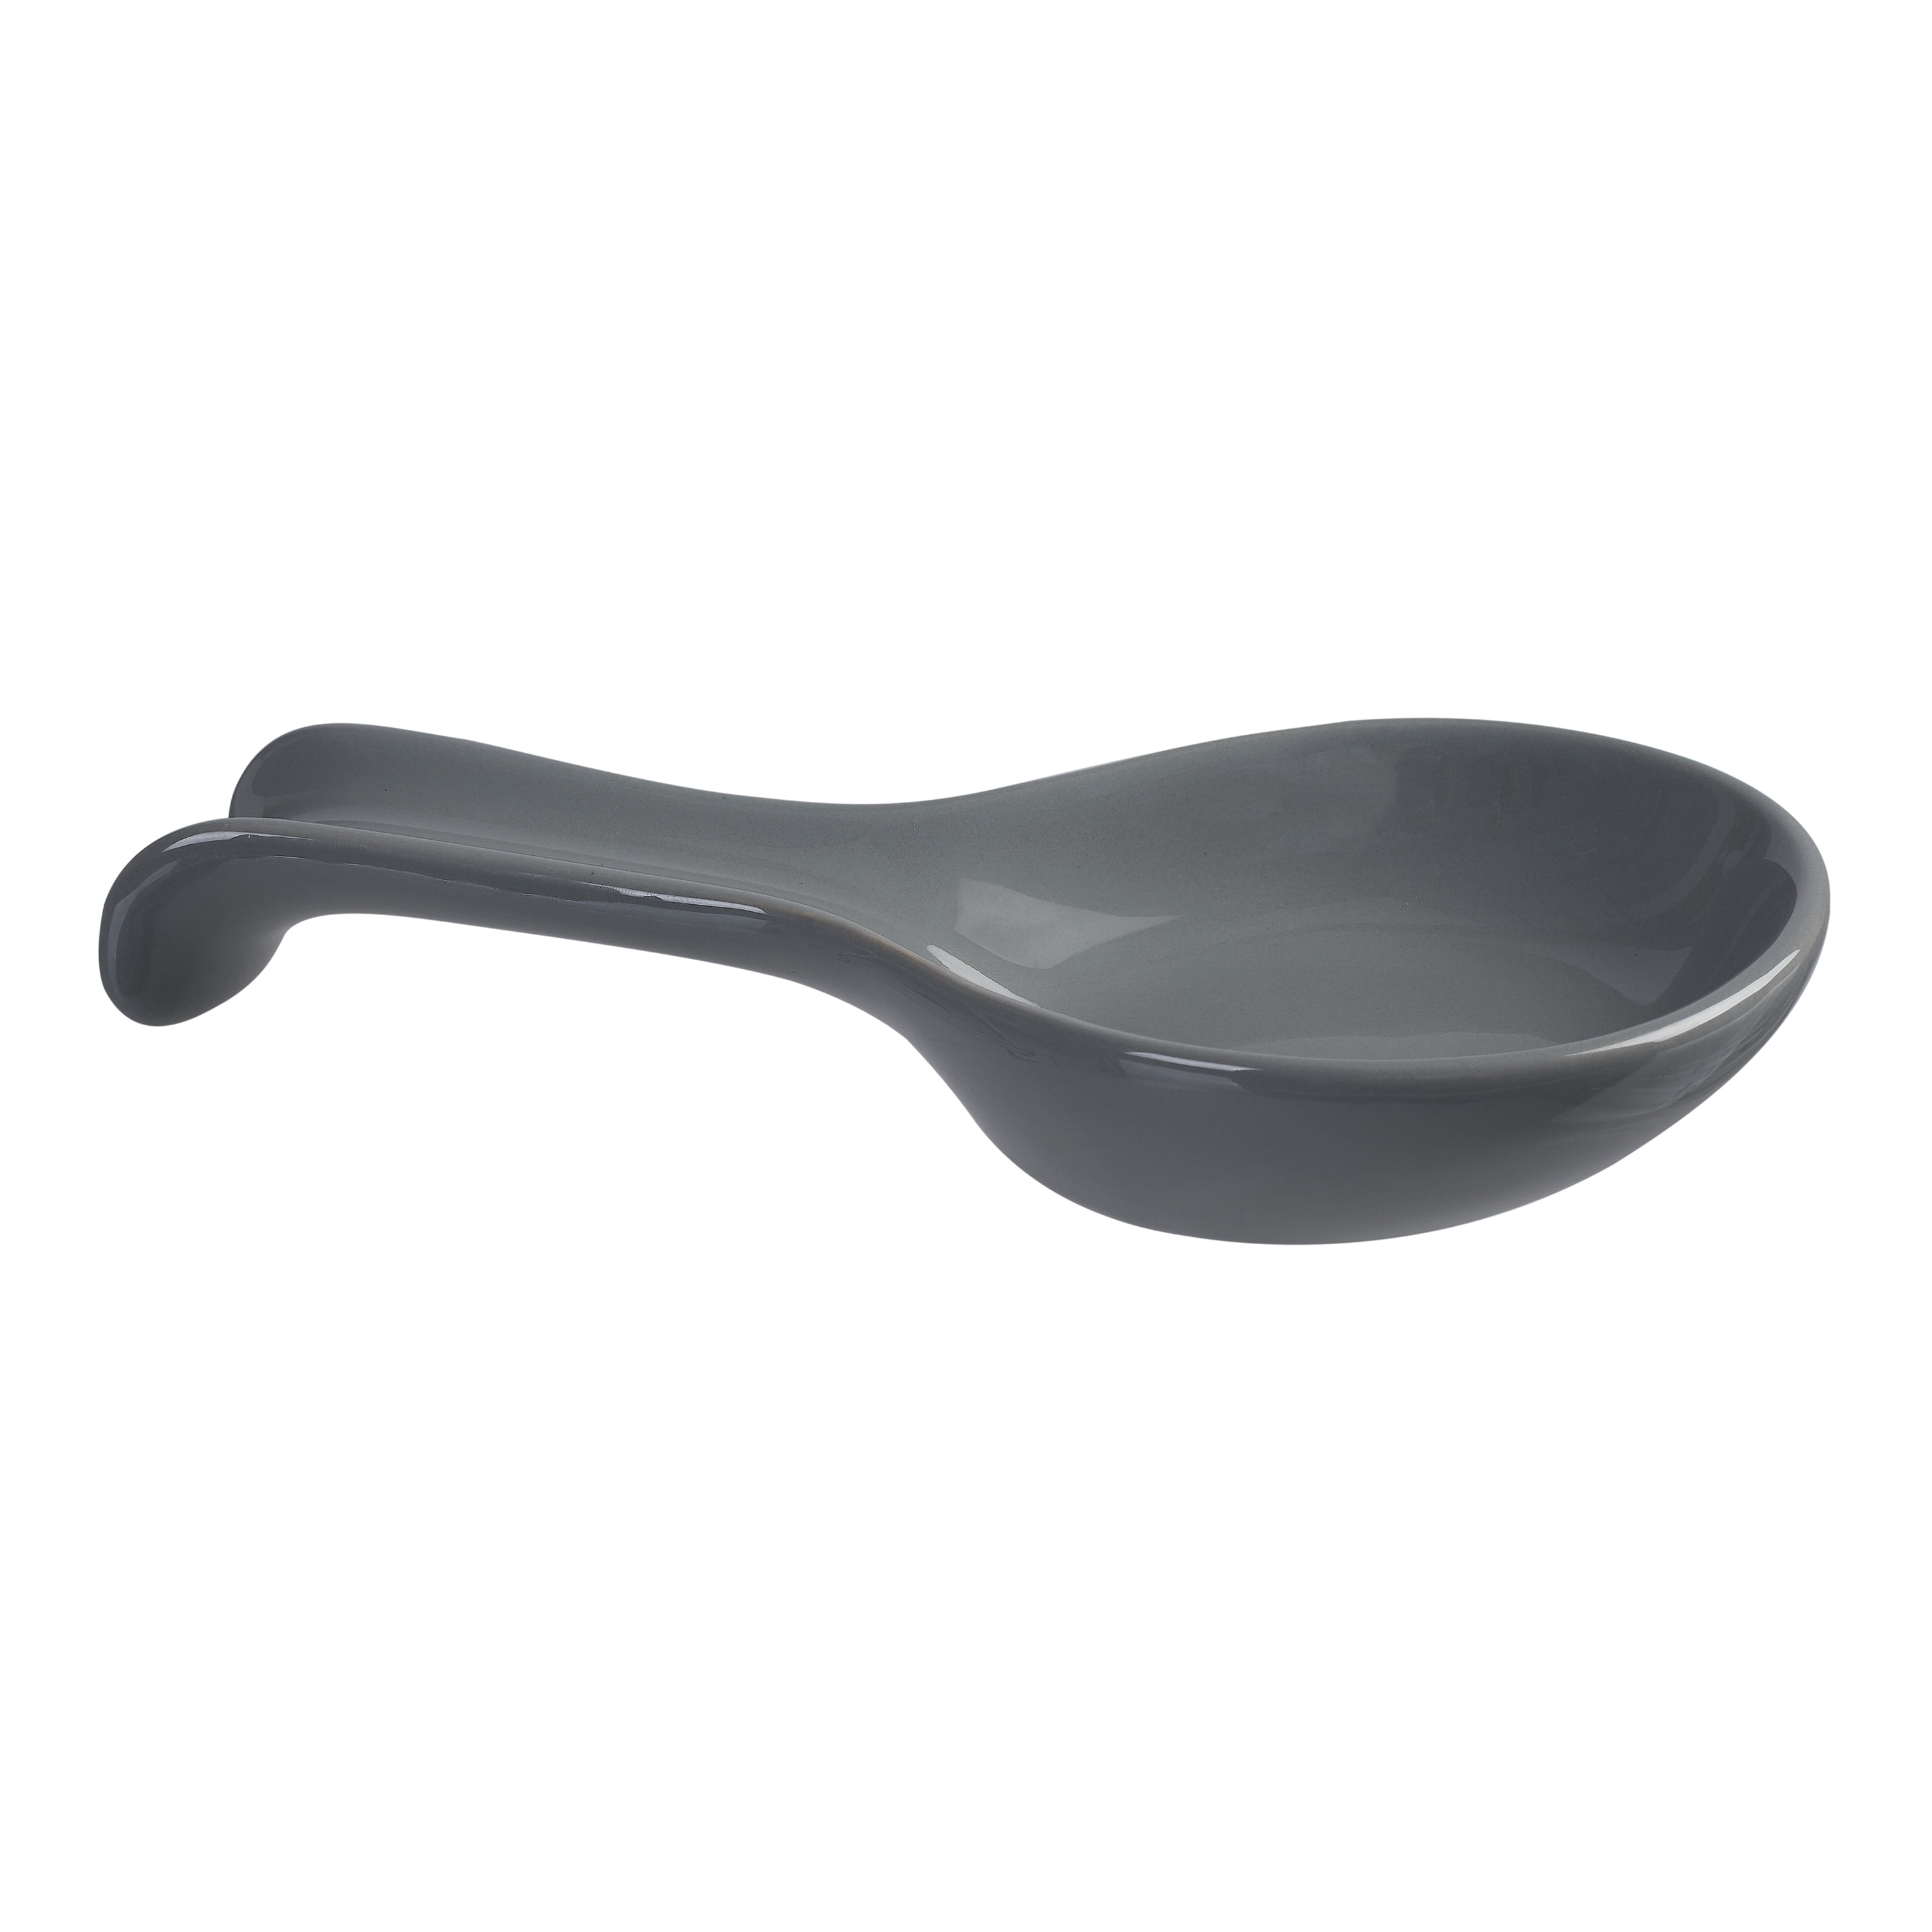 Générique Provençal Spoon Rest Gray 